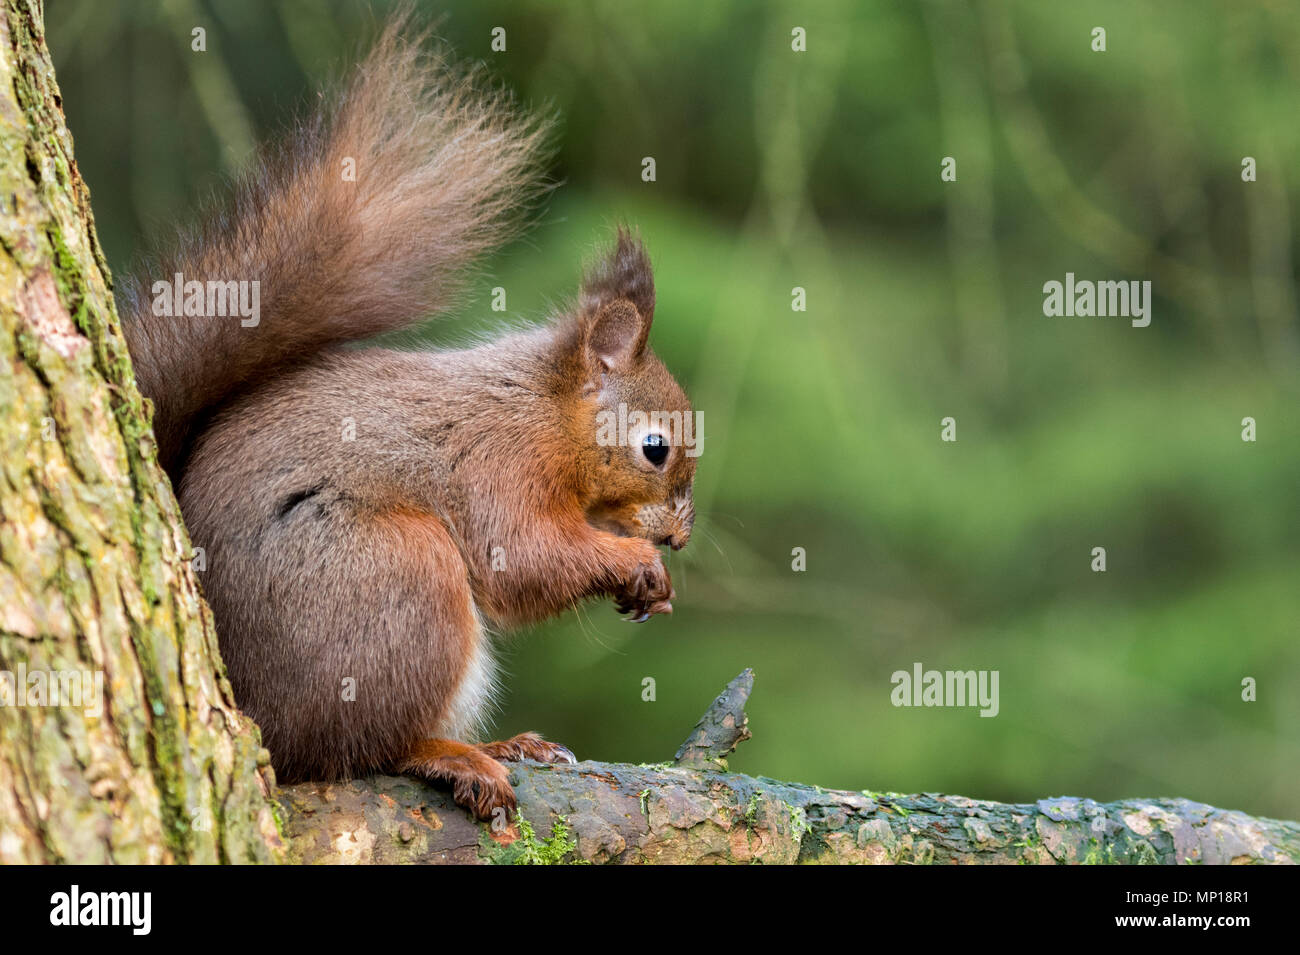 Single, écureuil rouge mignon, assis sur une branche élevée de l'alimentation, la Queue enroulée derrière - Snaizeholme Écureuil rouge, sentier par Hawes, Yorkshire, Angleterre, Royaume-Uni. Banque D'Images